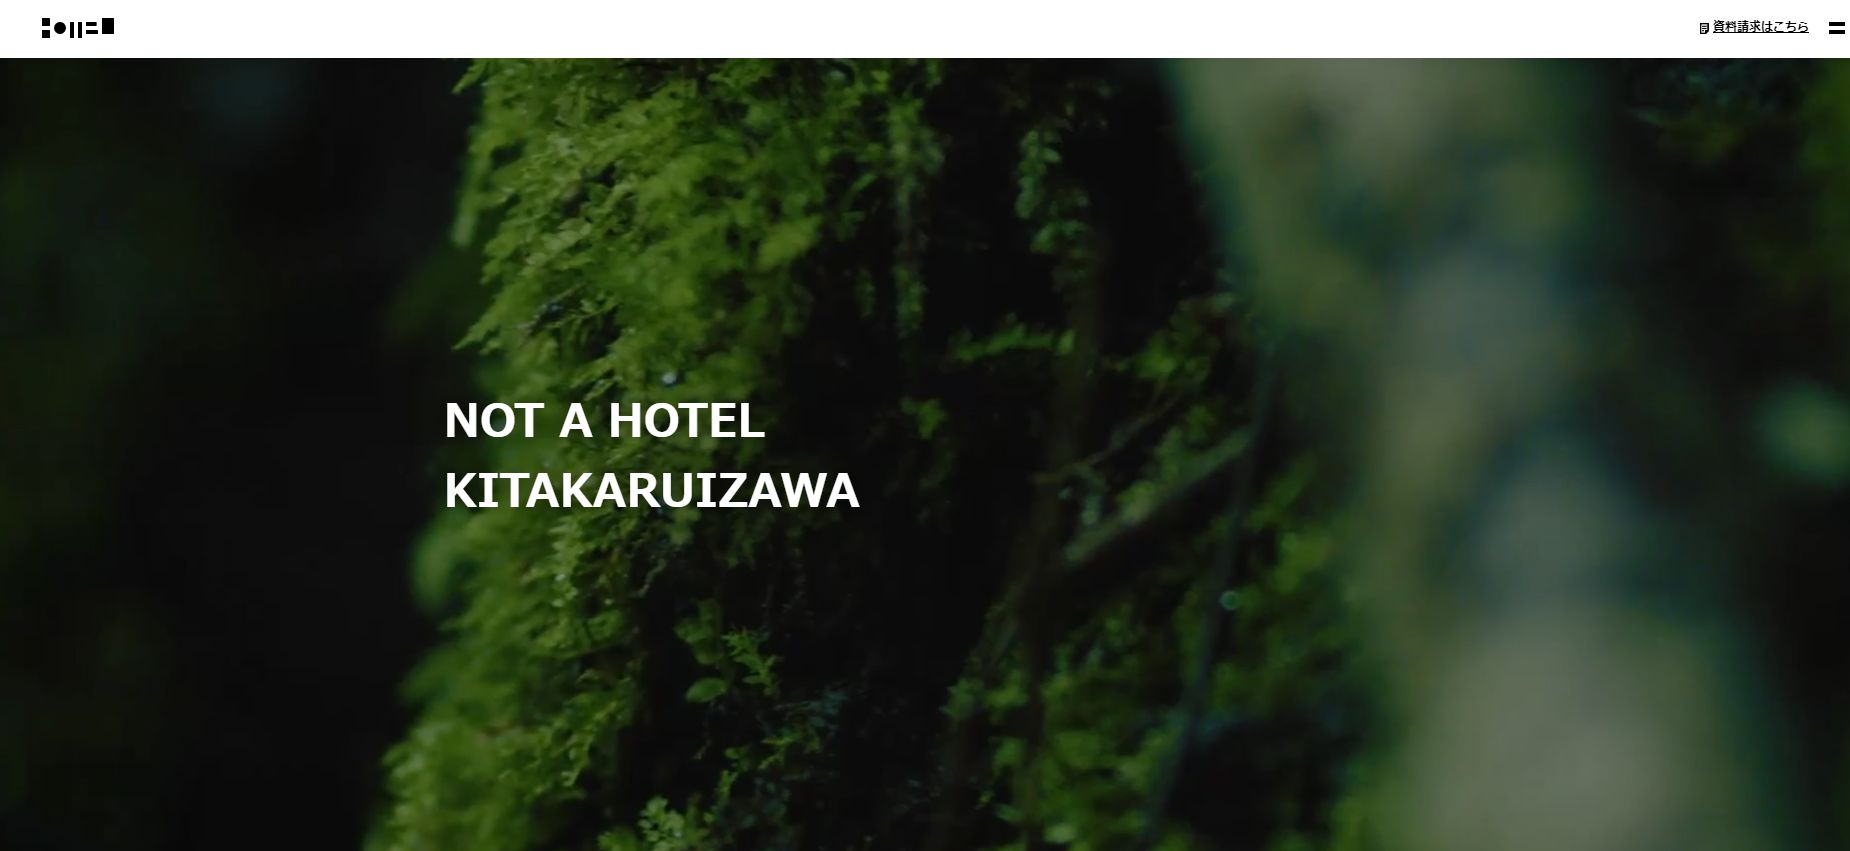 NOT A HOTEL KITAKARUIZAWA